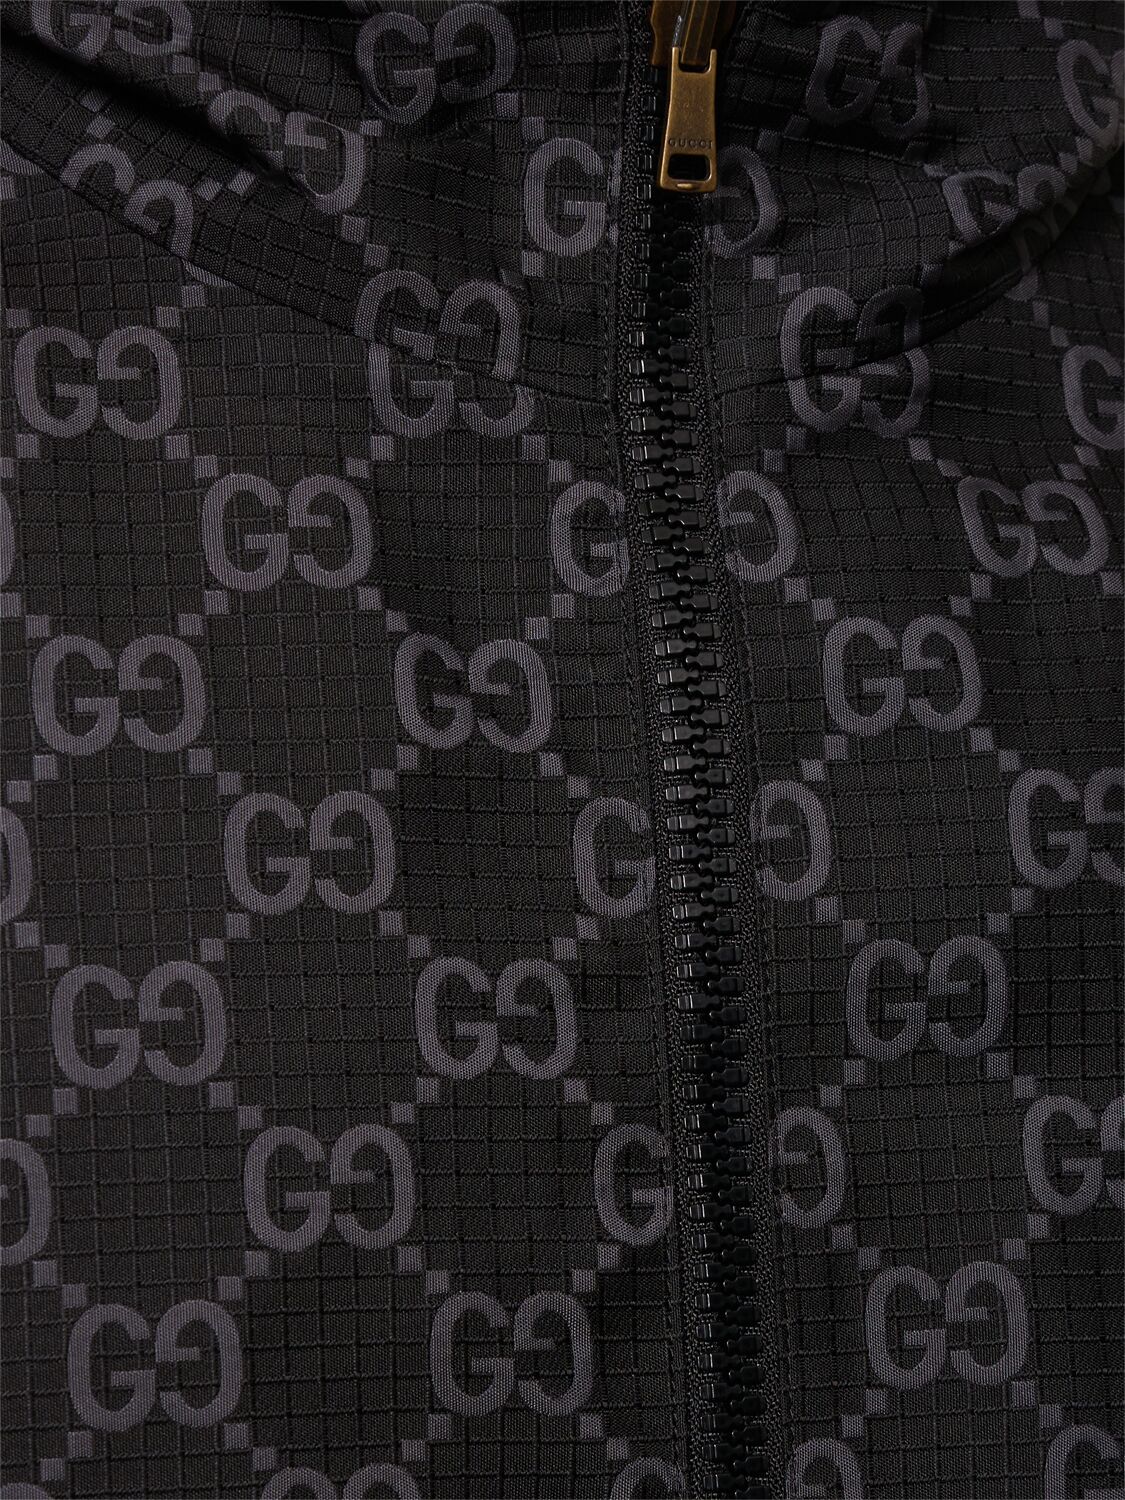 GG抗撕裂科技织物夹克